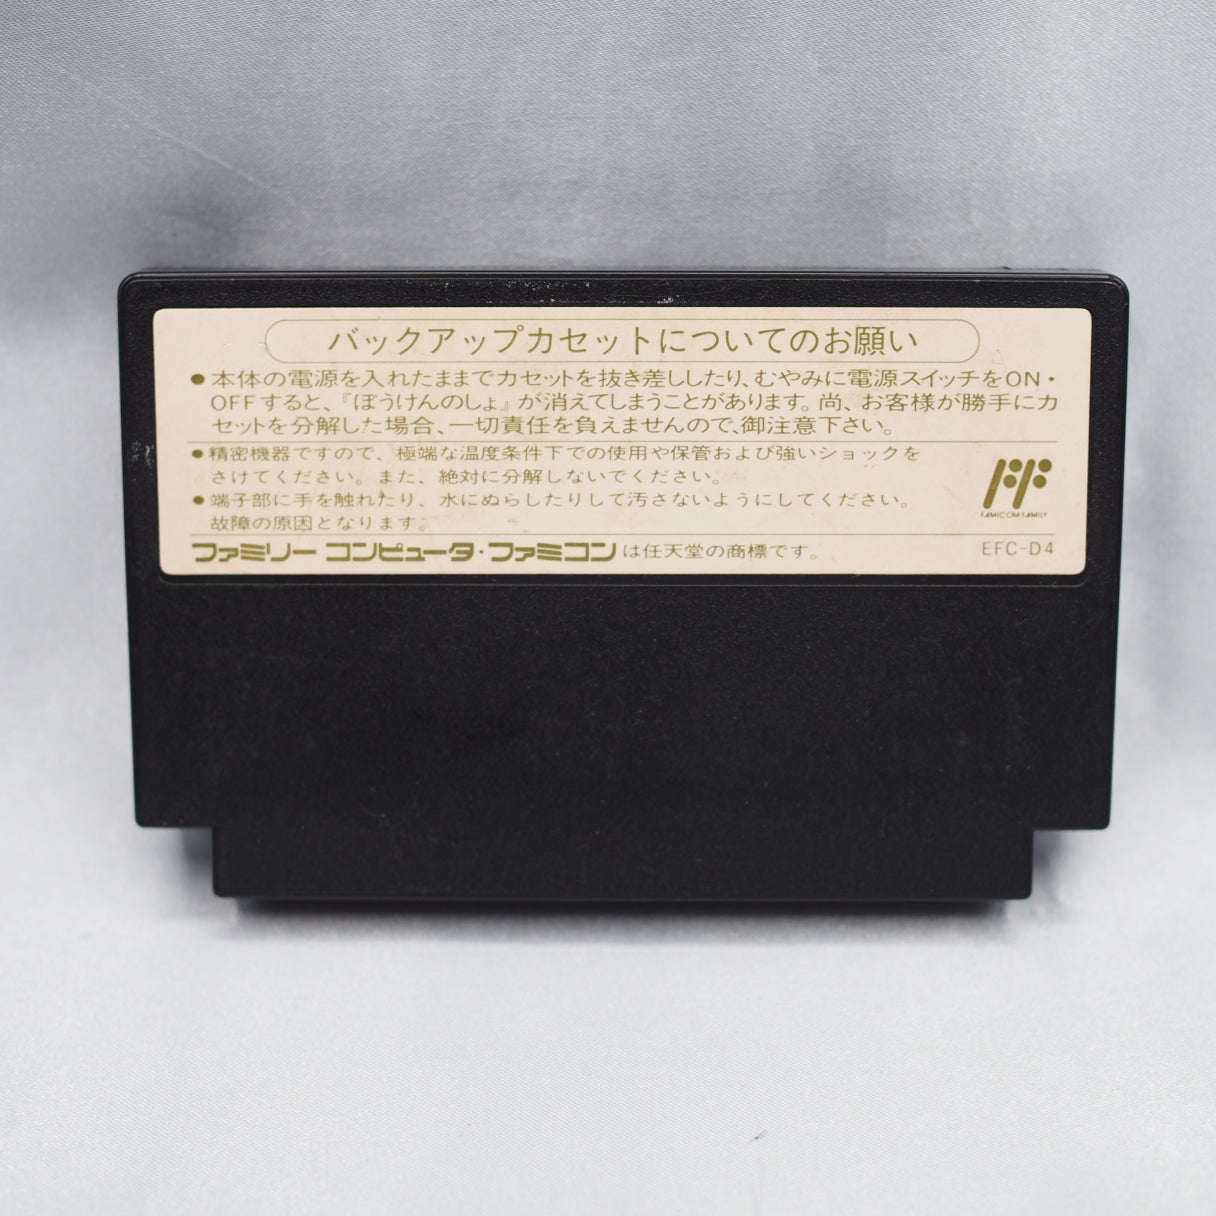 Super Famicom 4 Games SET